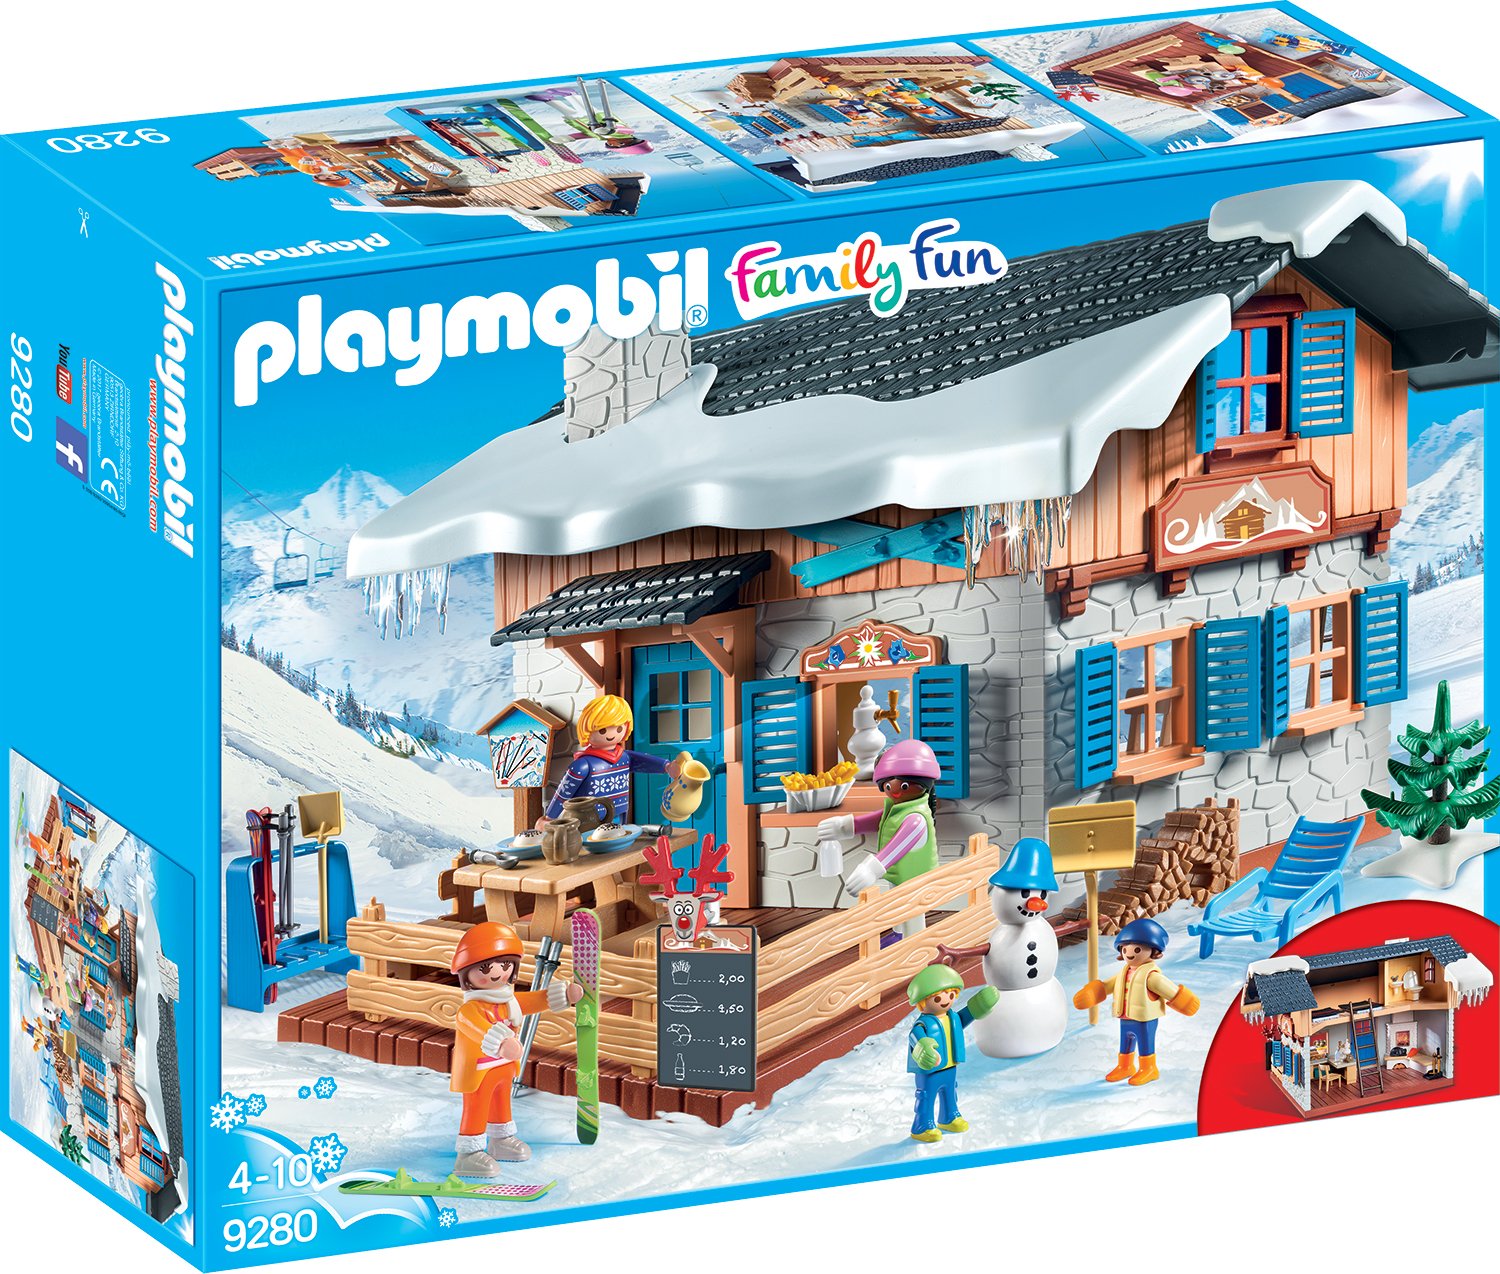 PLAYMOBIL Family Fun 9280 Skihütte, Ab 4 Jahren [Exklusiv bei Amazon]